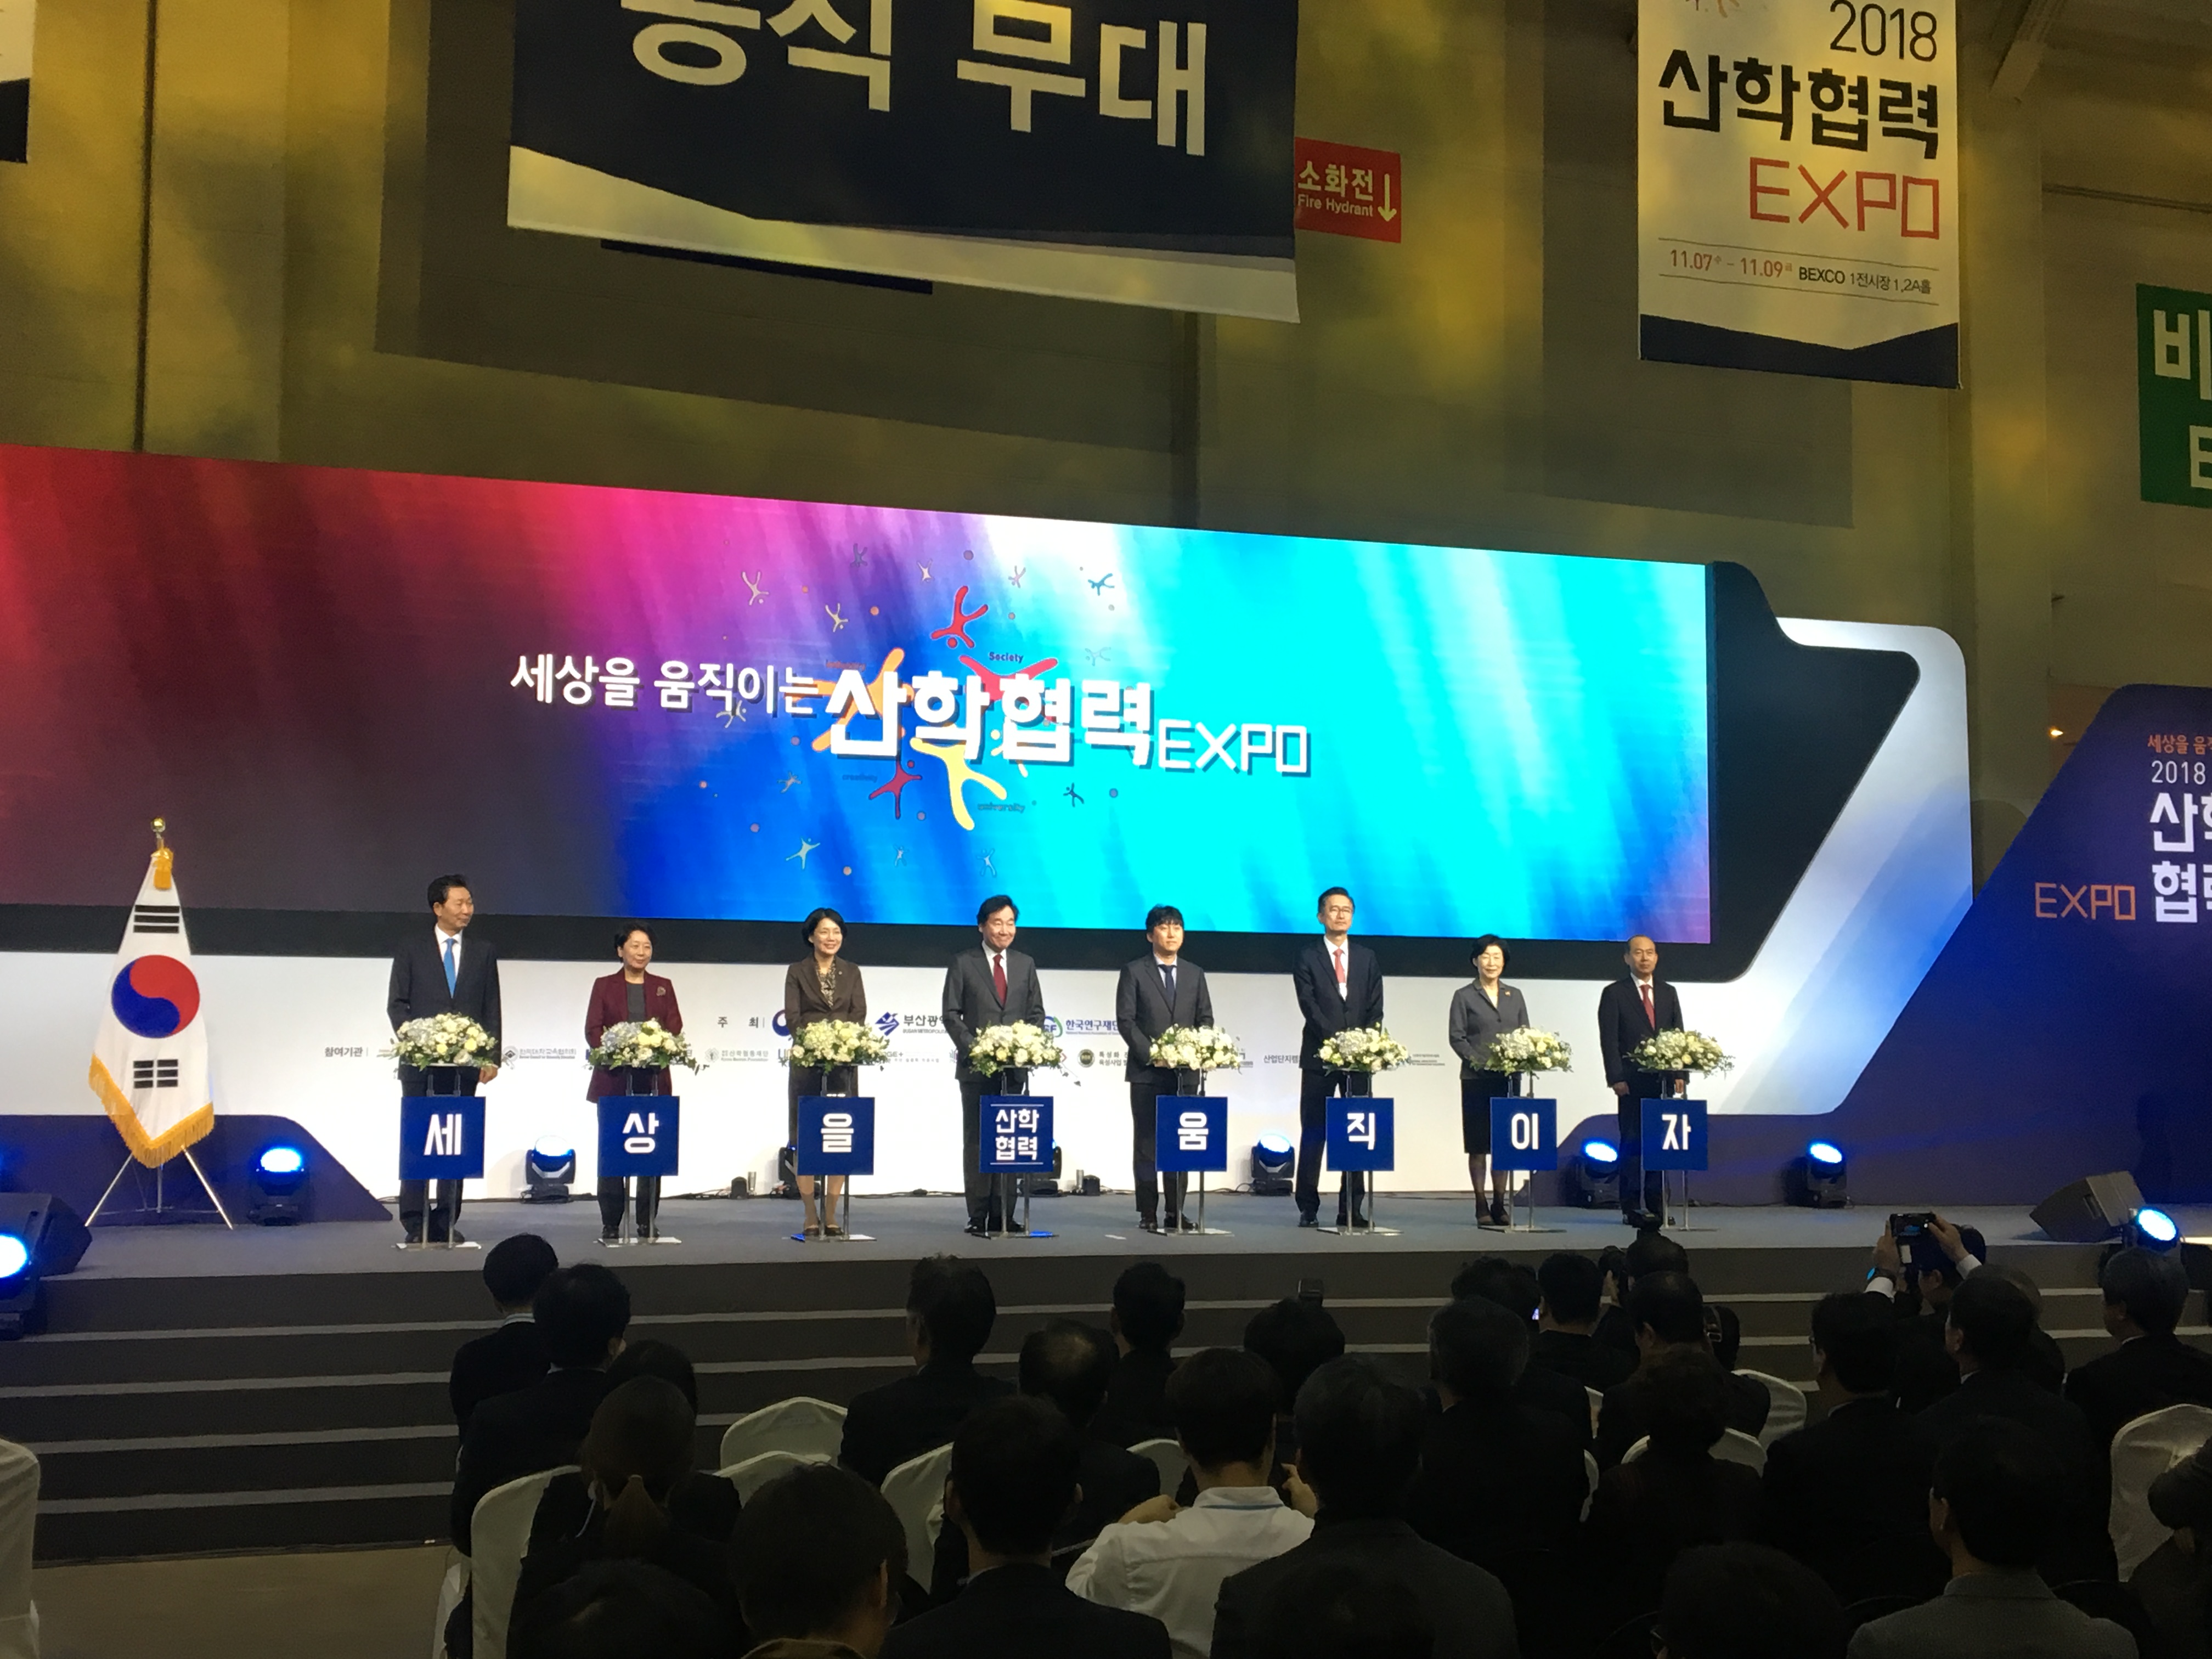 부천대학교 사회맞춤형교육사업단 2018 산학협력 EXPO 중점형사업 부문 장려상 수상